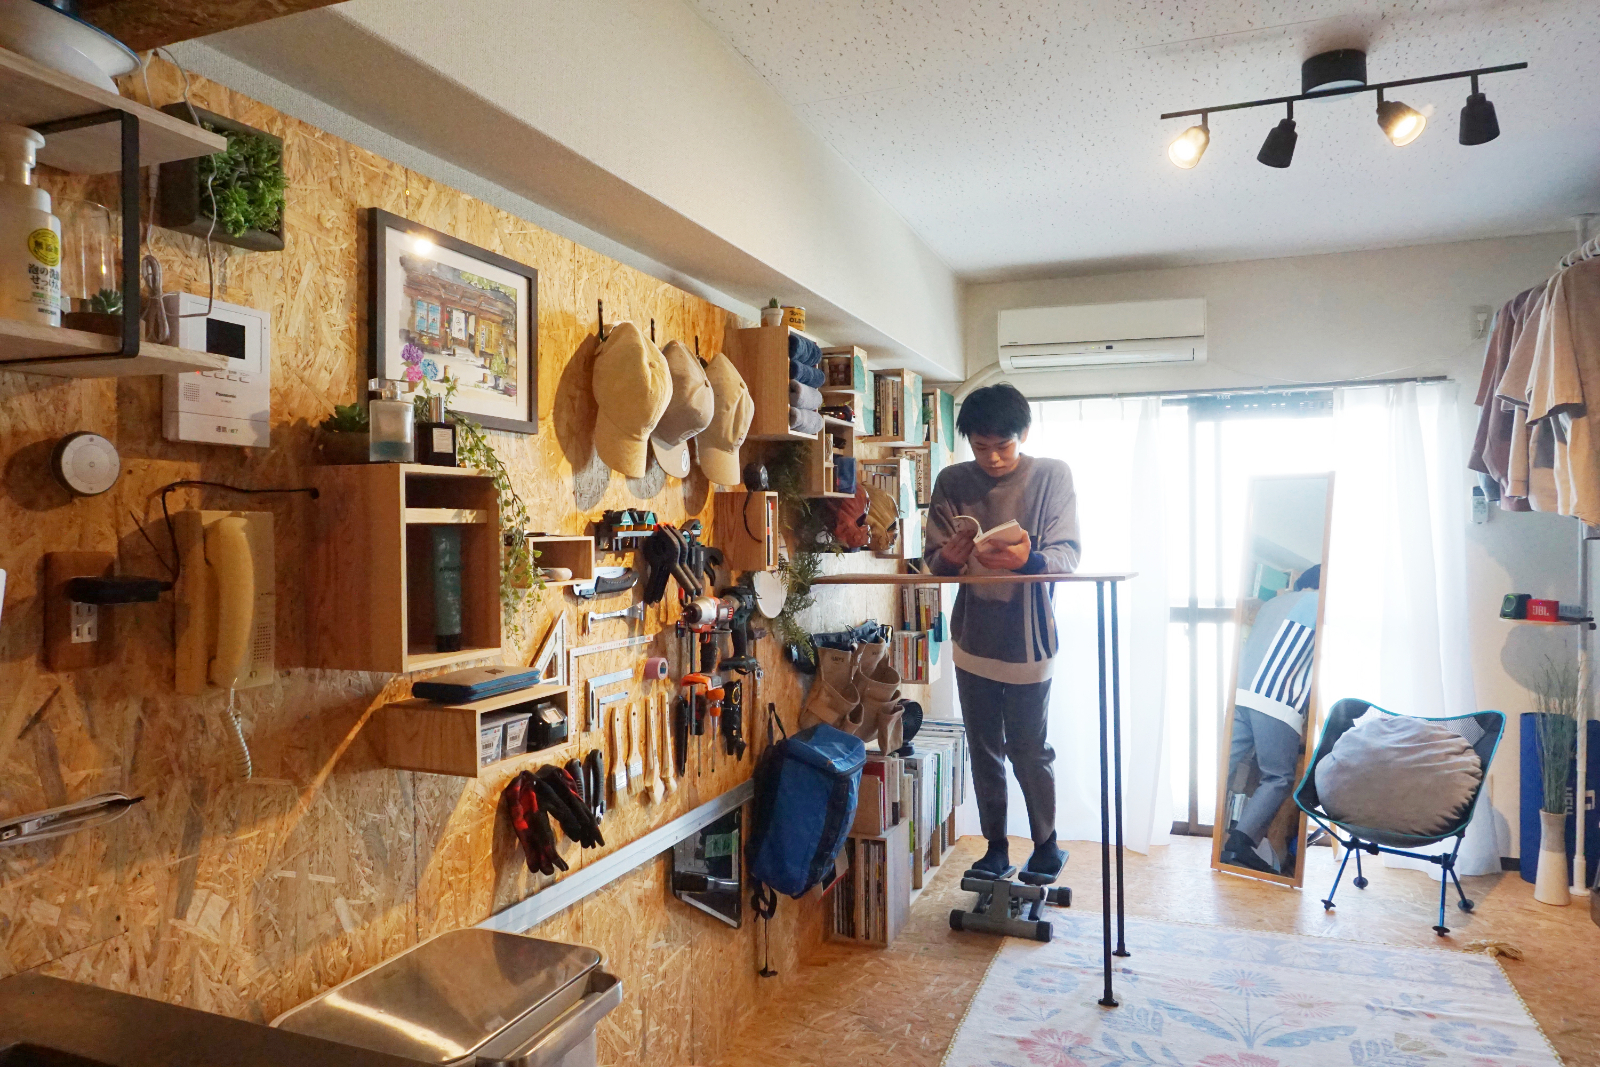 川尻さんの部屋のOSB壁には、ボックス型の本棚や小物入れ、DIYのツールやファッションアイテムがずらり。まるでショップのよう